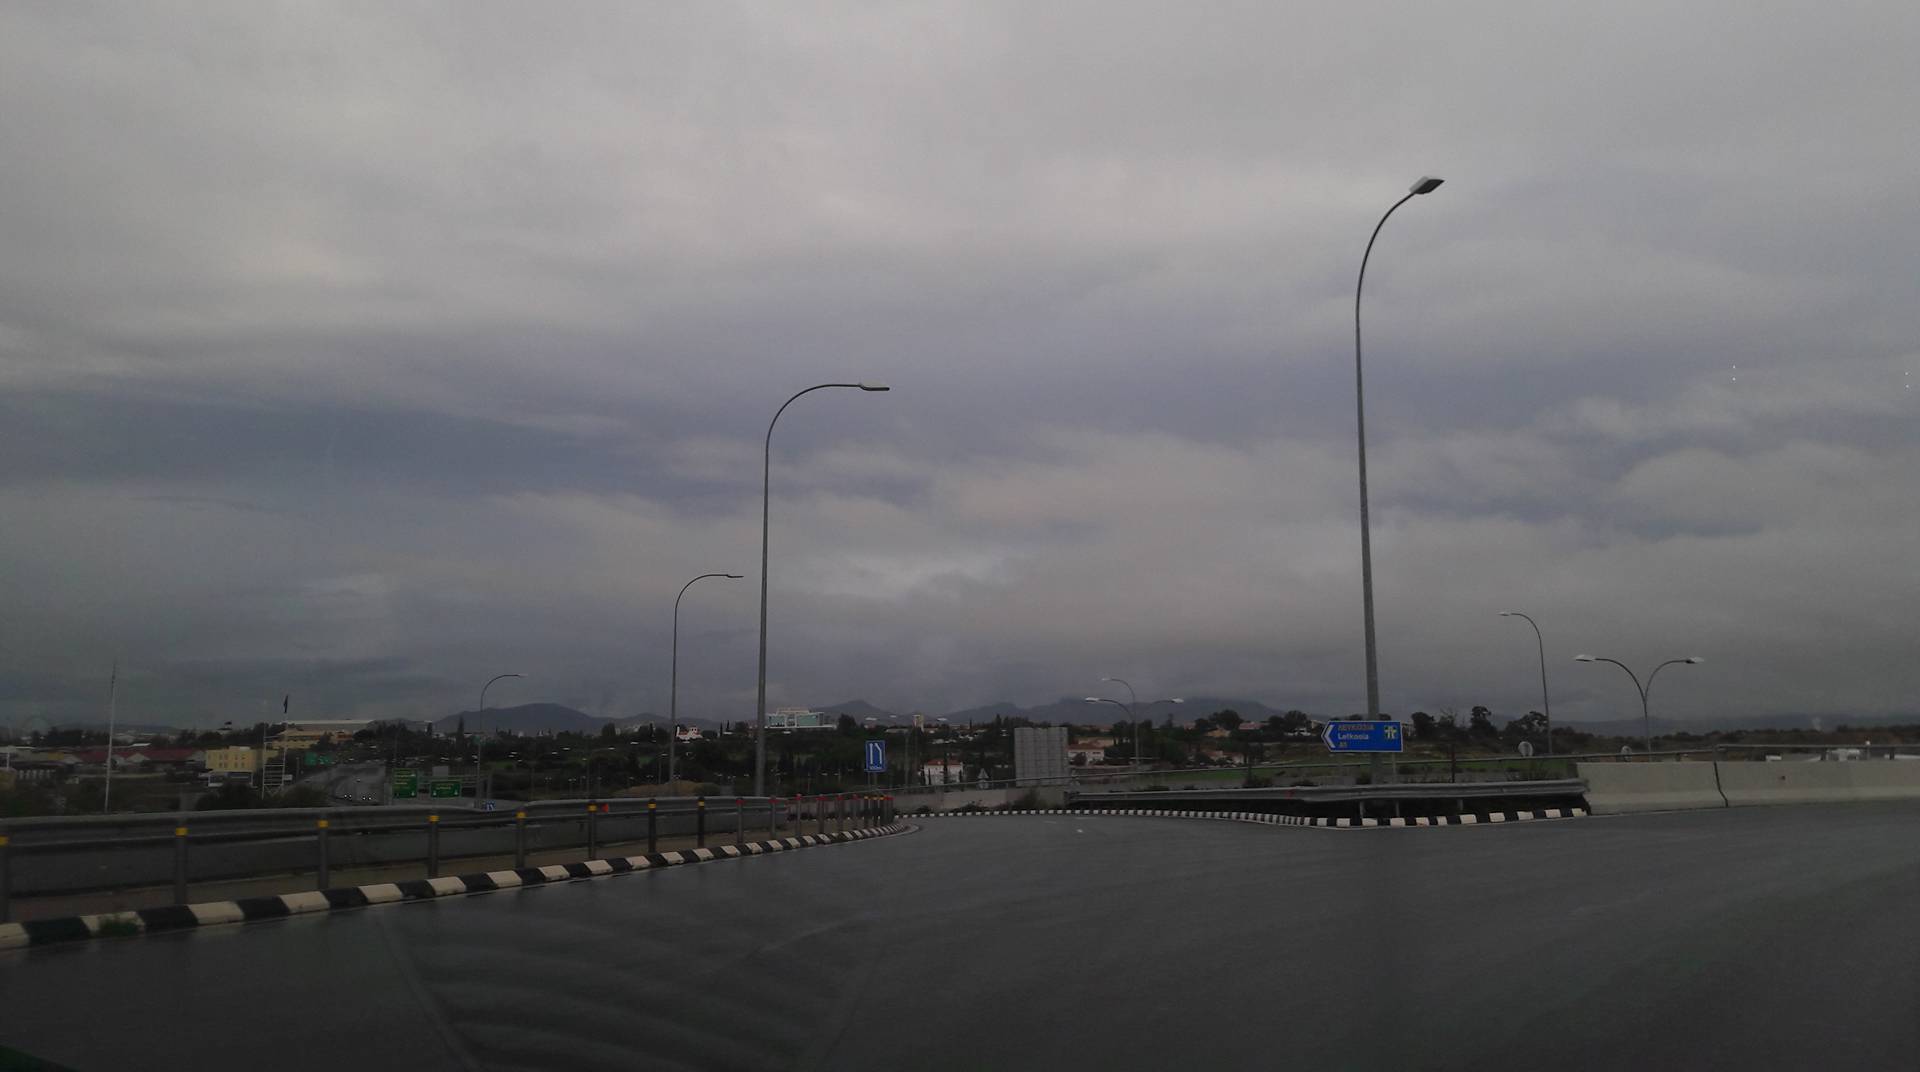 Καταρρακτώδεις βροχές και περιορισμένη ορατότητα στον αυτοκινητόδρομο Λευκωσίας - Λάρνακας 